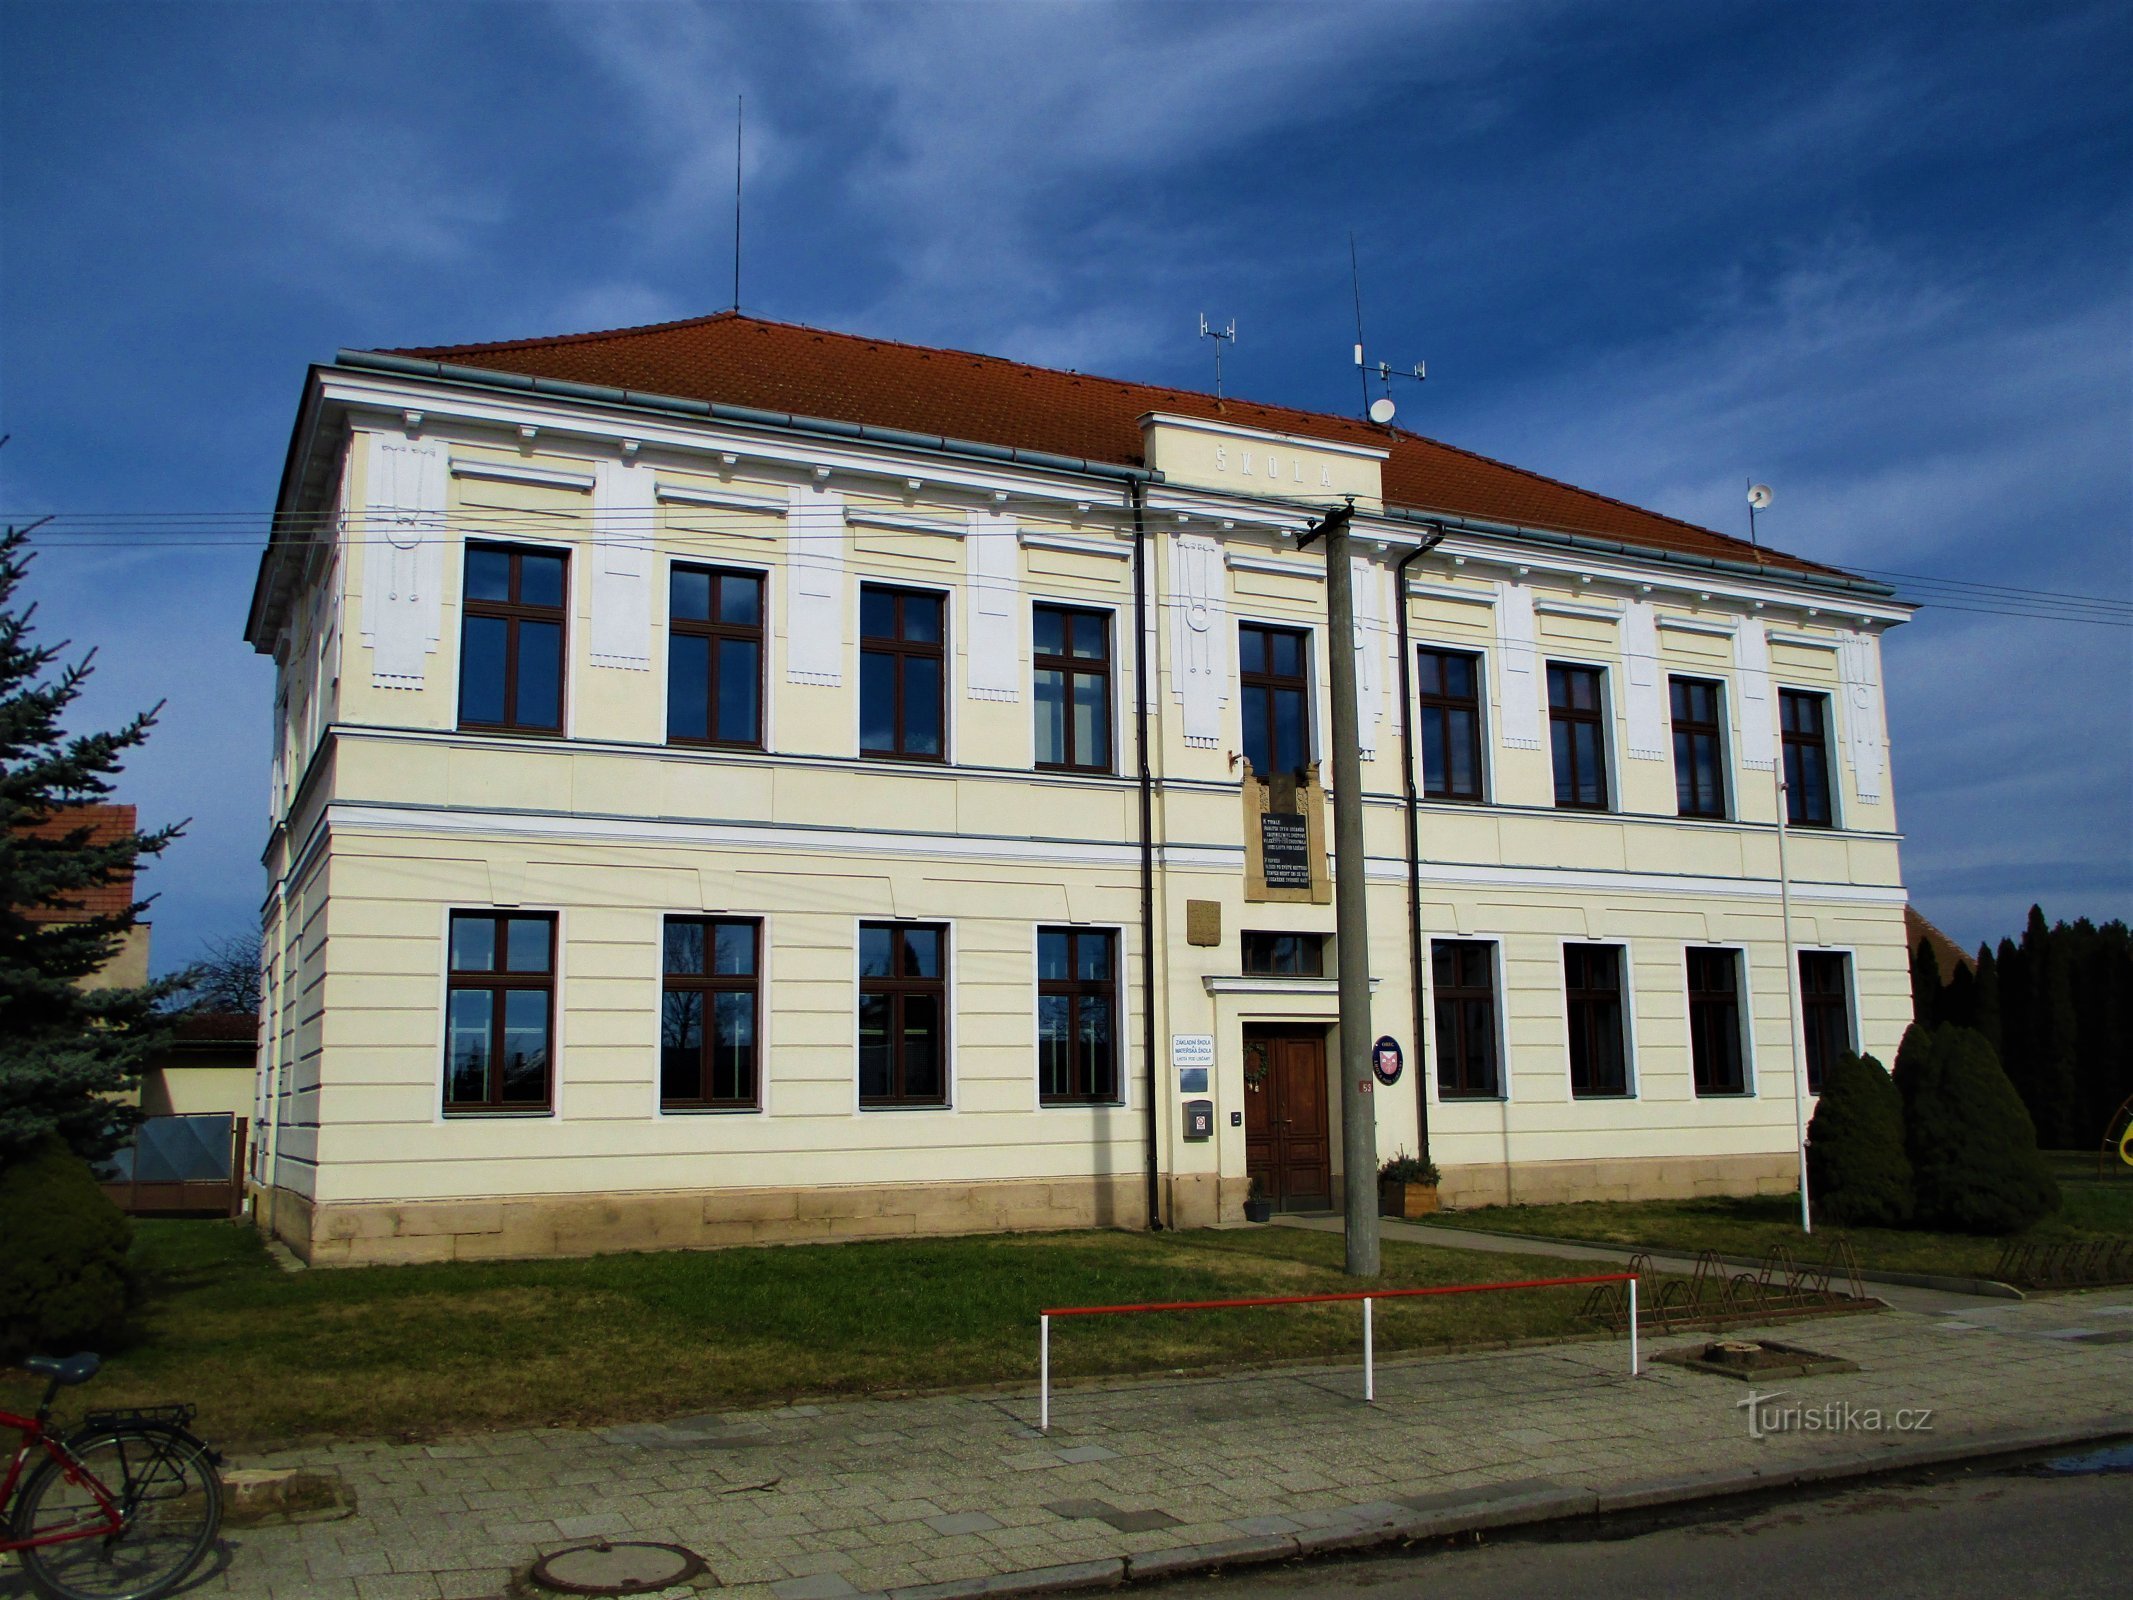 Iskola (Lhota pod Libčany)